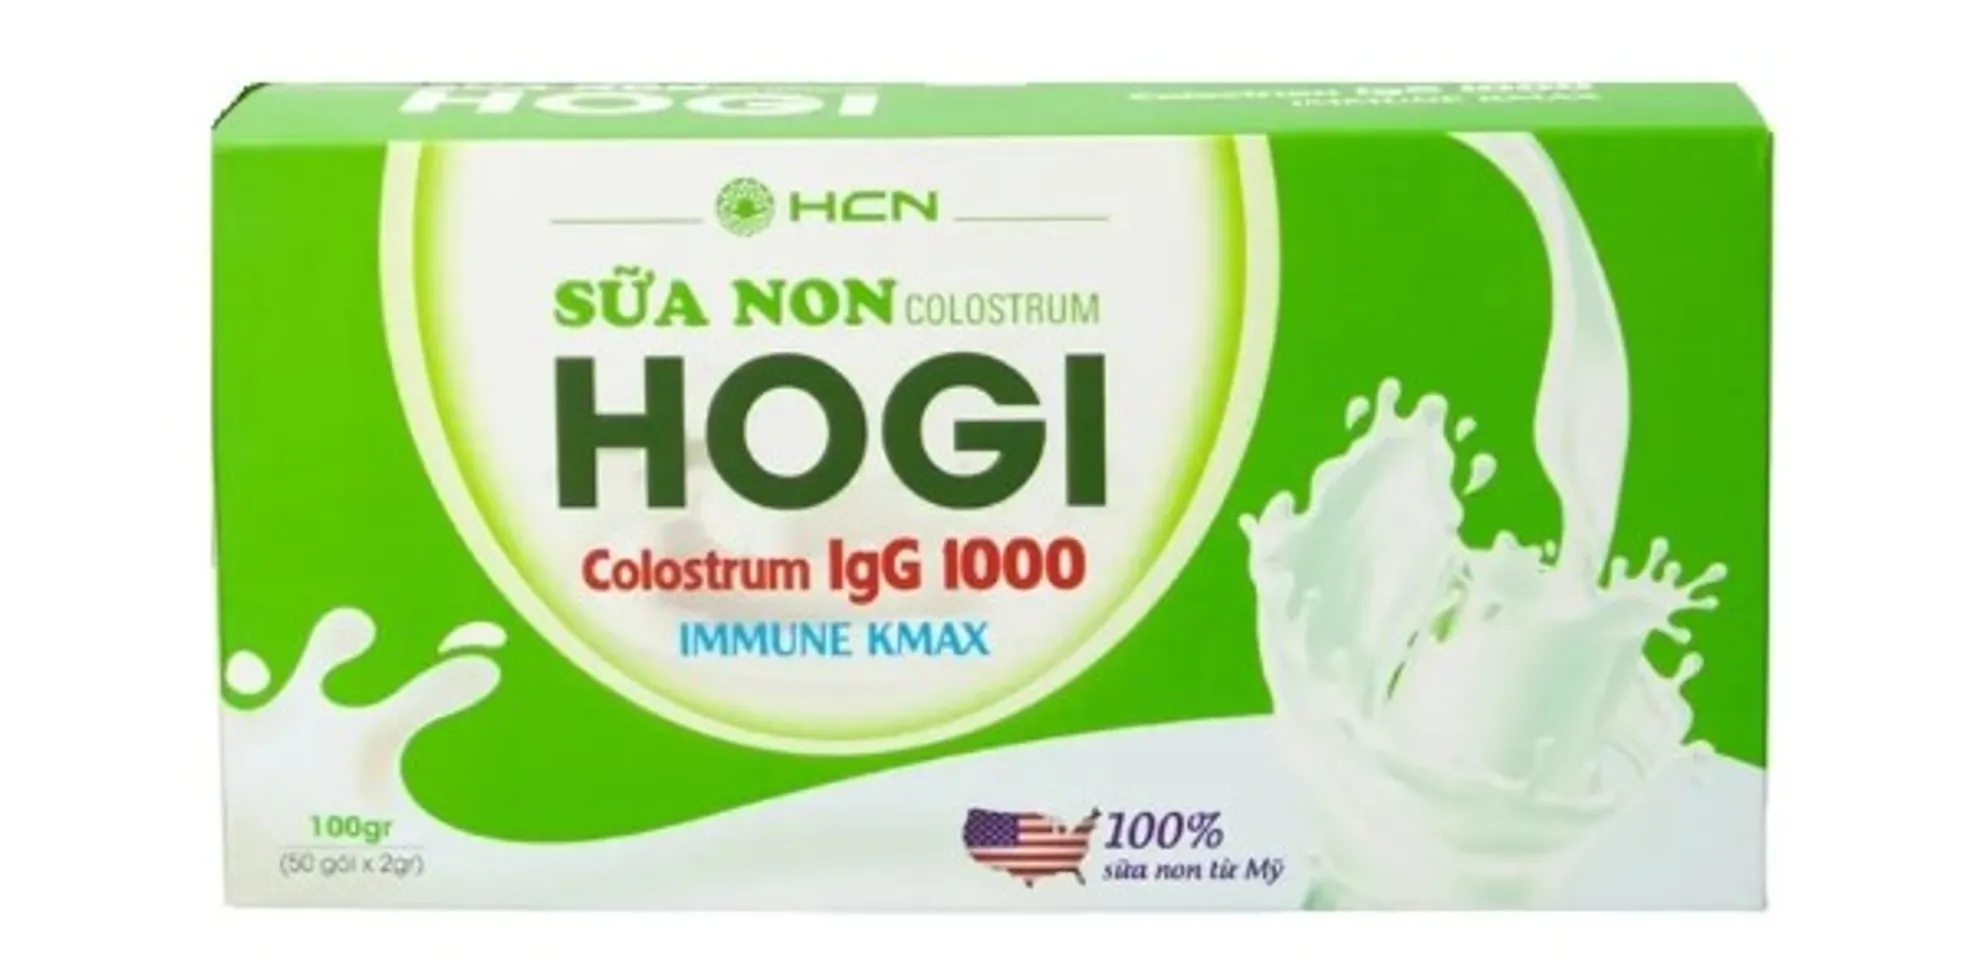 Sữa non Colostrum Hogi 100gr chính hãng